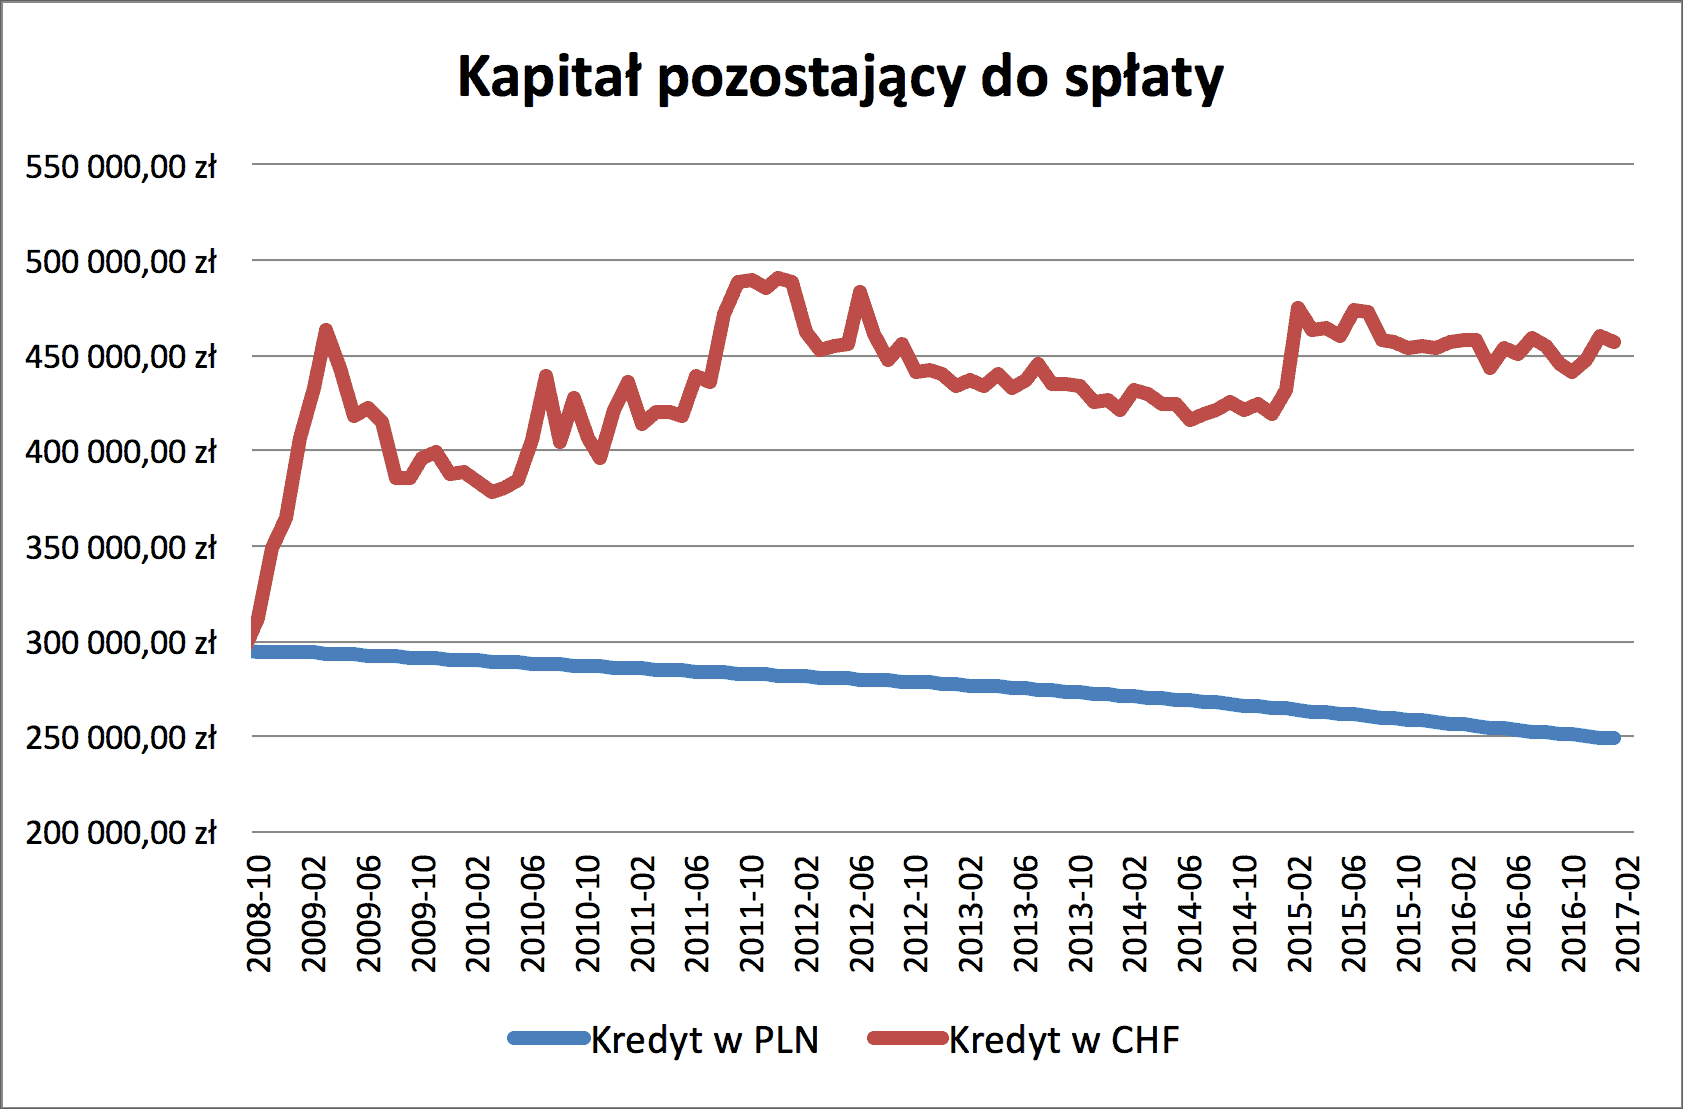 Kredyt CHF i PLN kapitał do spłaty